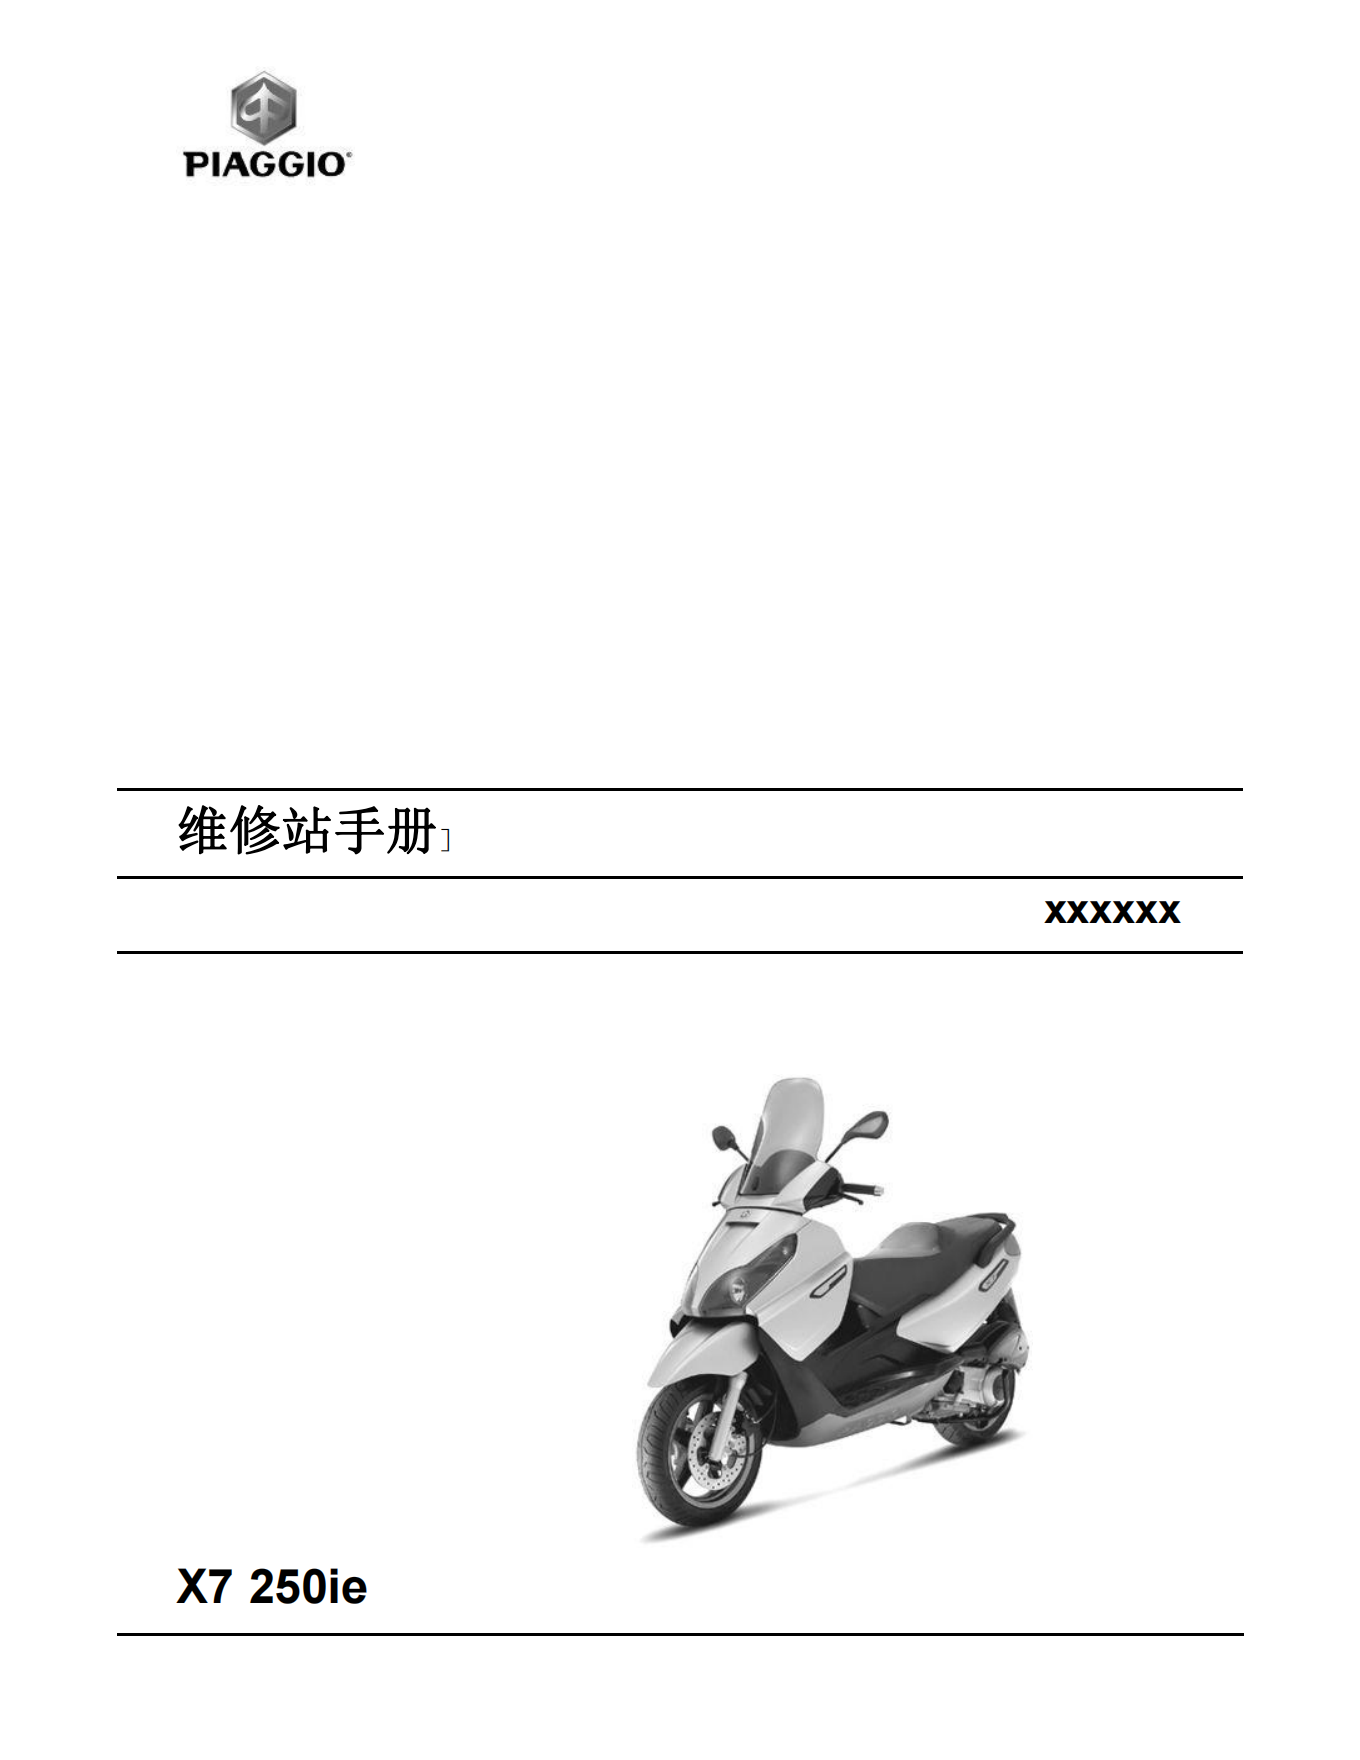 简体中文2007年比亚乔x7维修手册X7 250ie维修手册插图